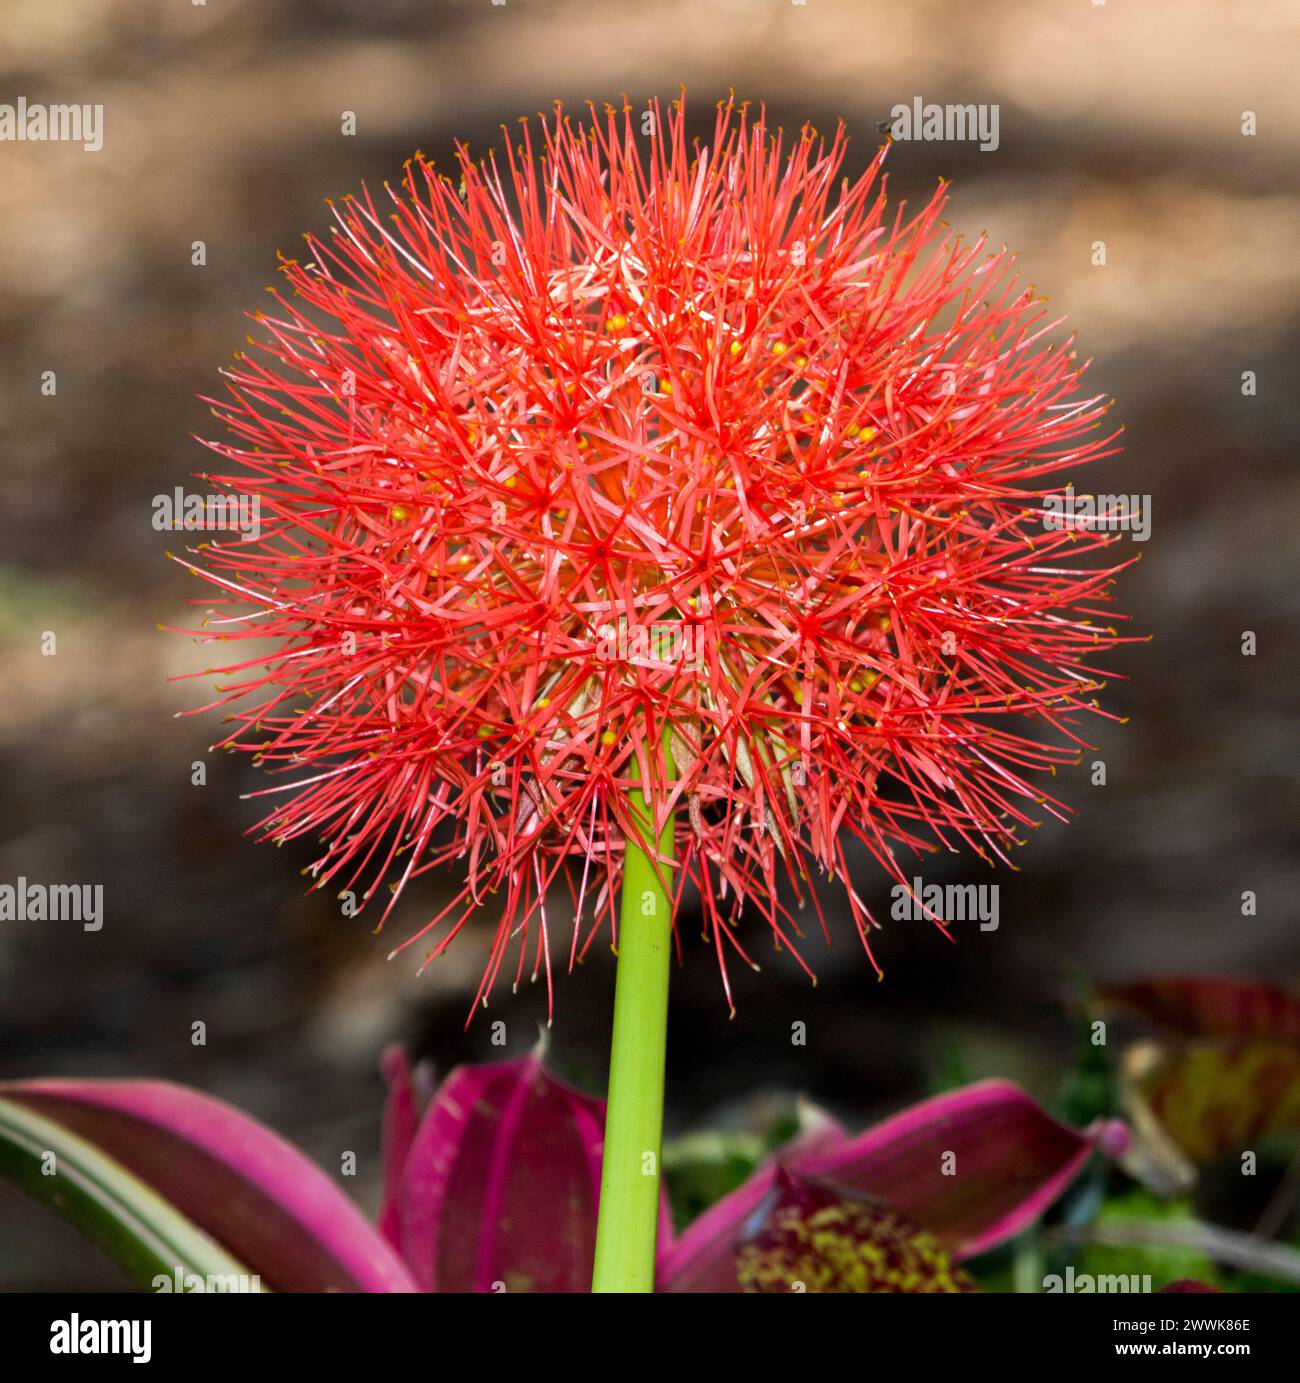 Fleur rouge Bglobulaire brillante inhabituelle de Scadoxus multiflorus / Haemanthus multiflorus African Blood Lily sur fond brun clair Banque D'Images